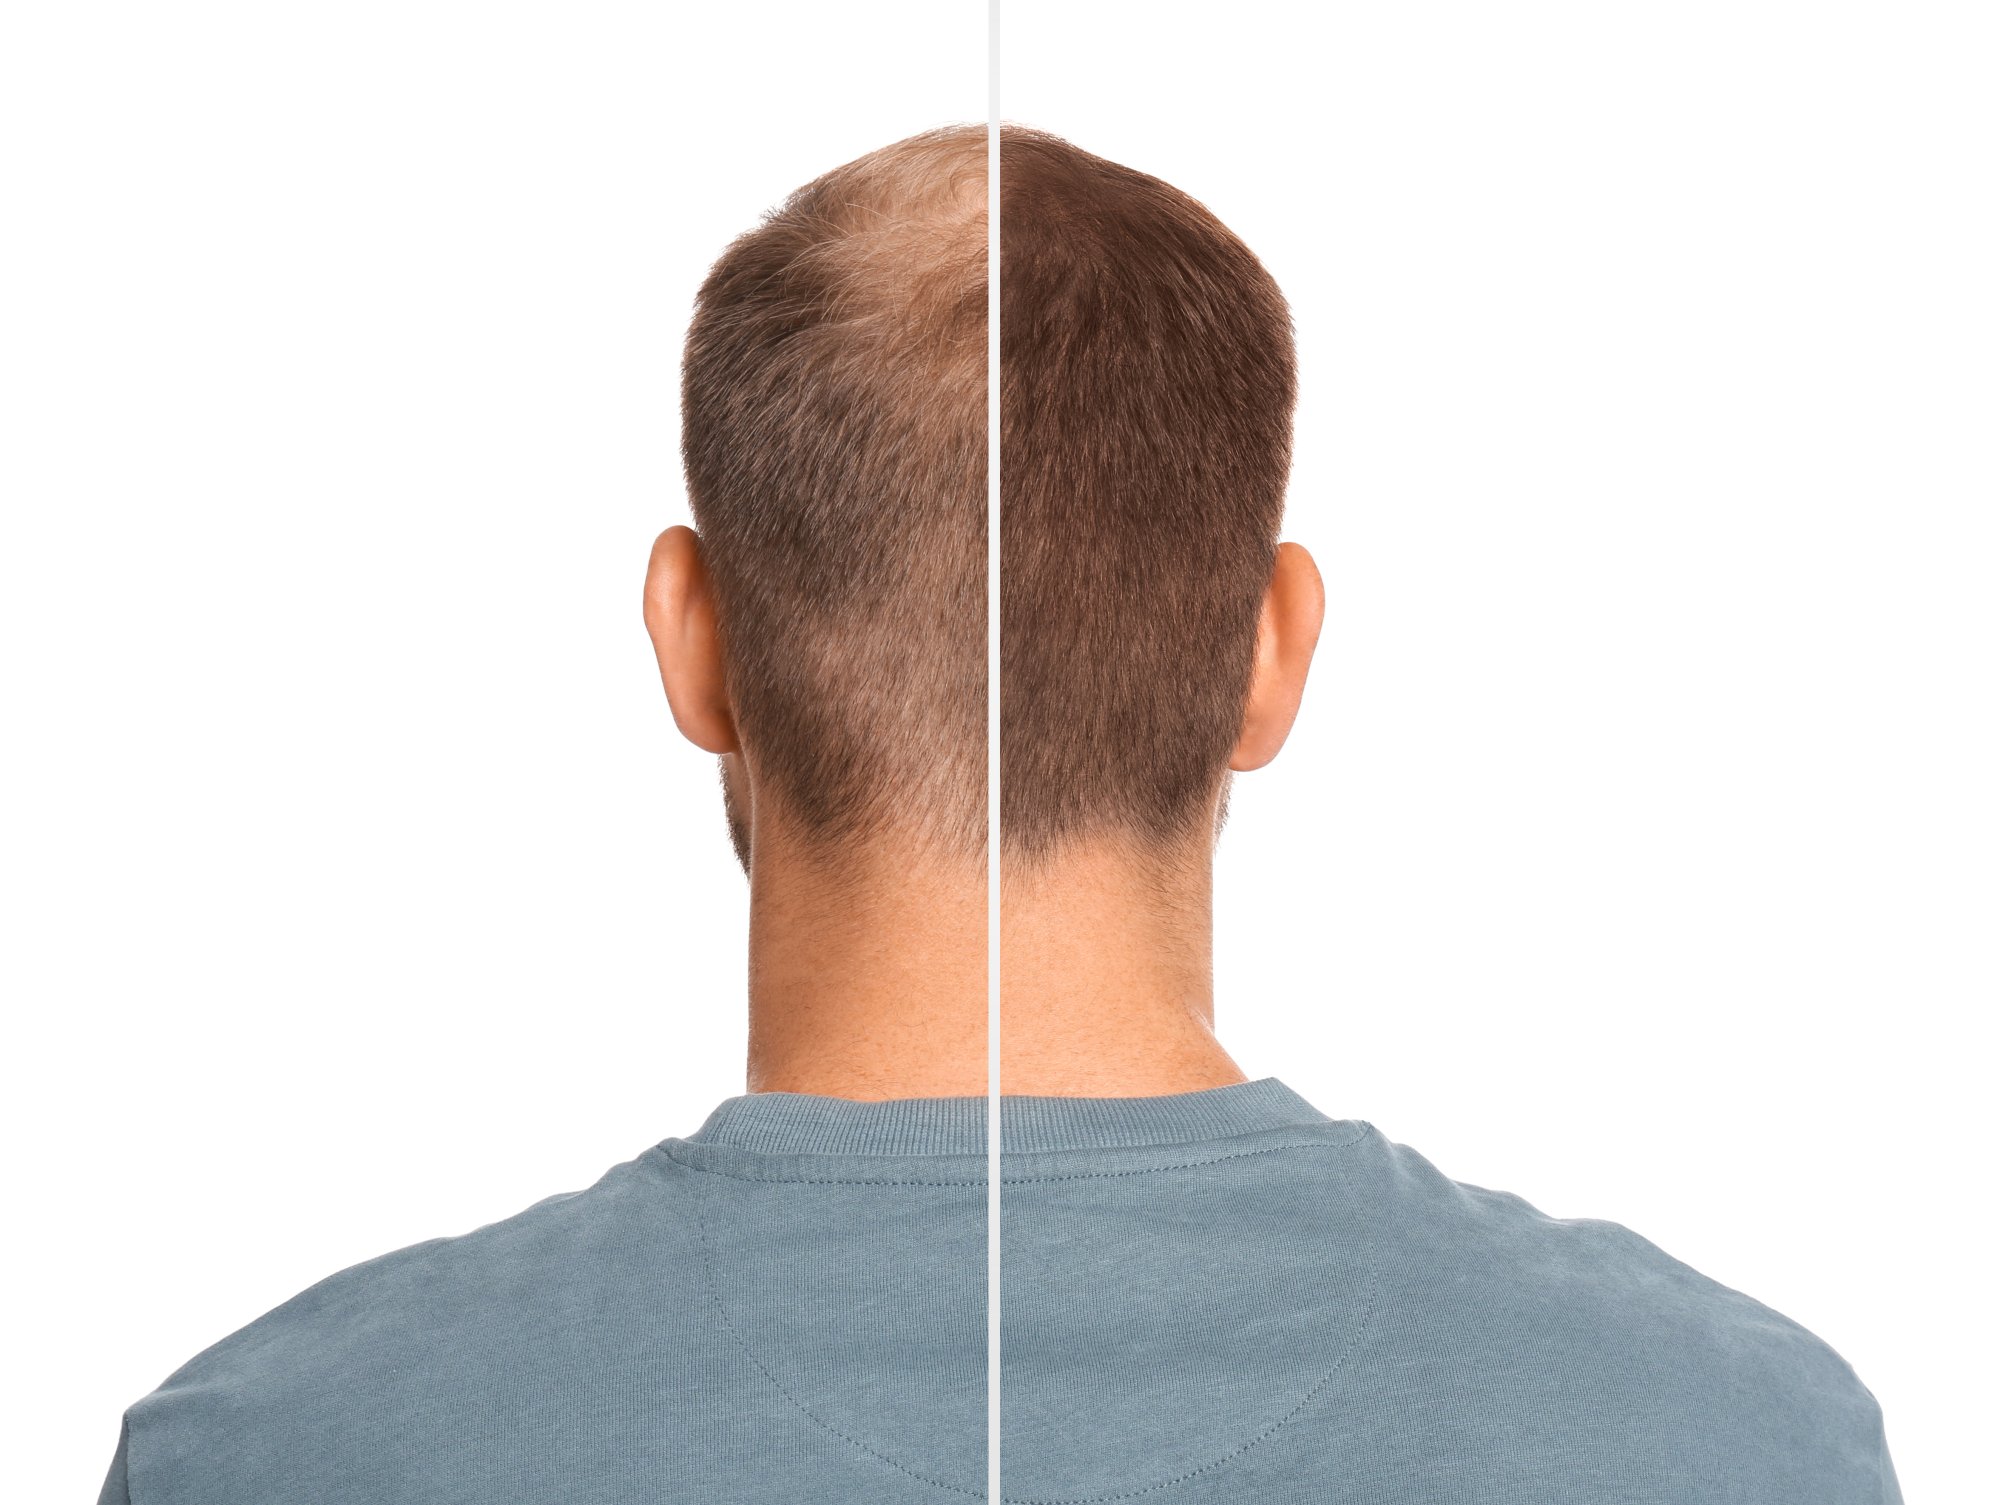 Пересадка волос для мужчин методом FUE